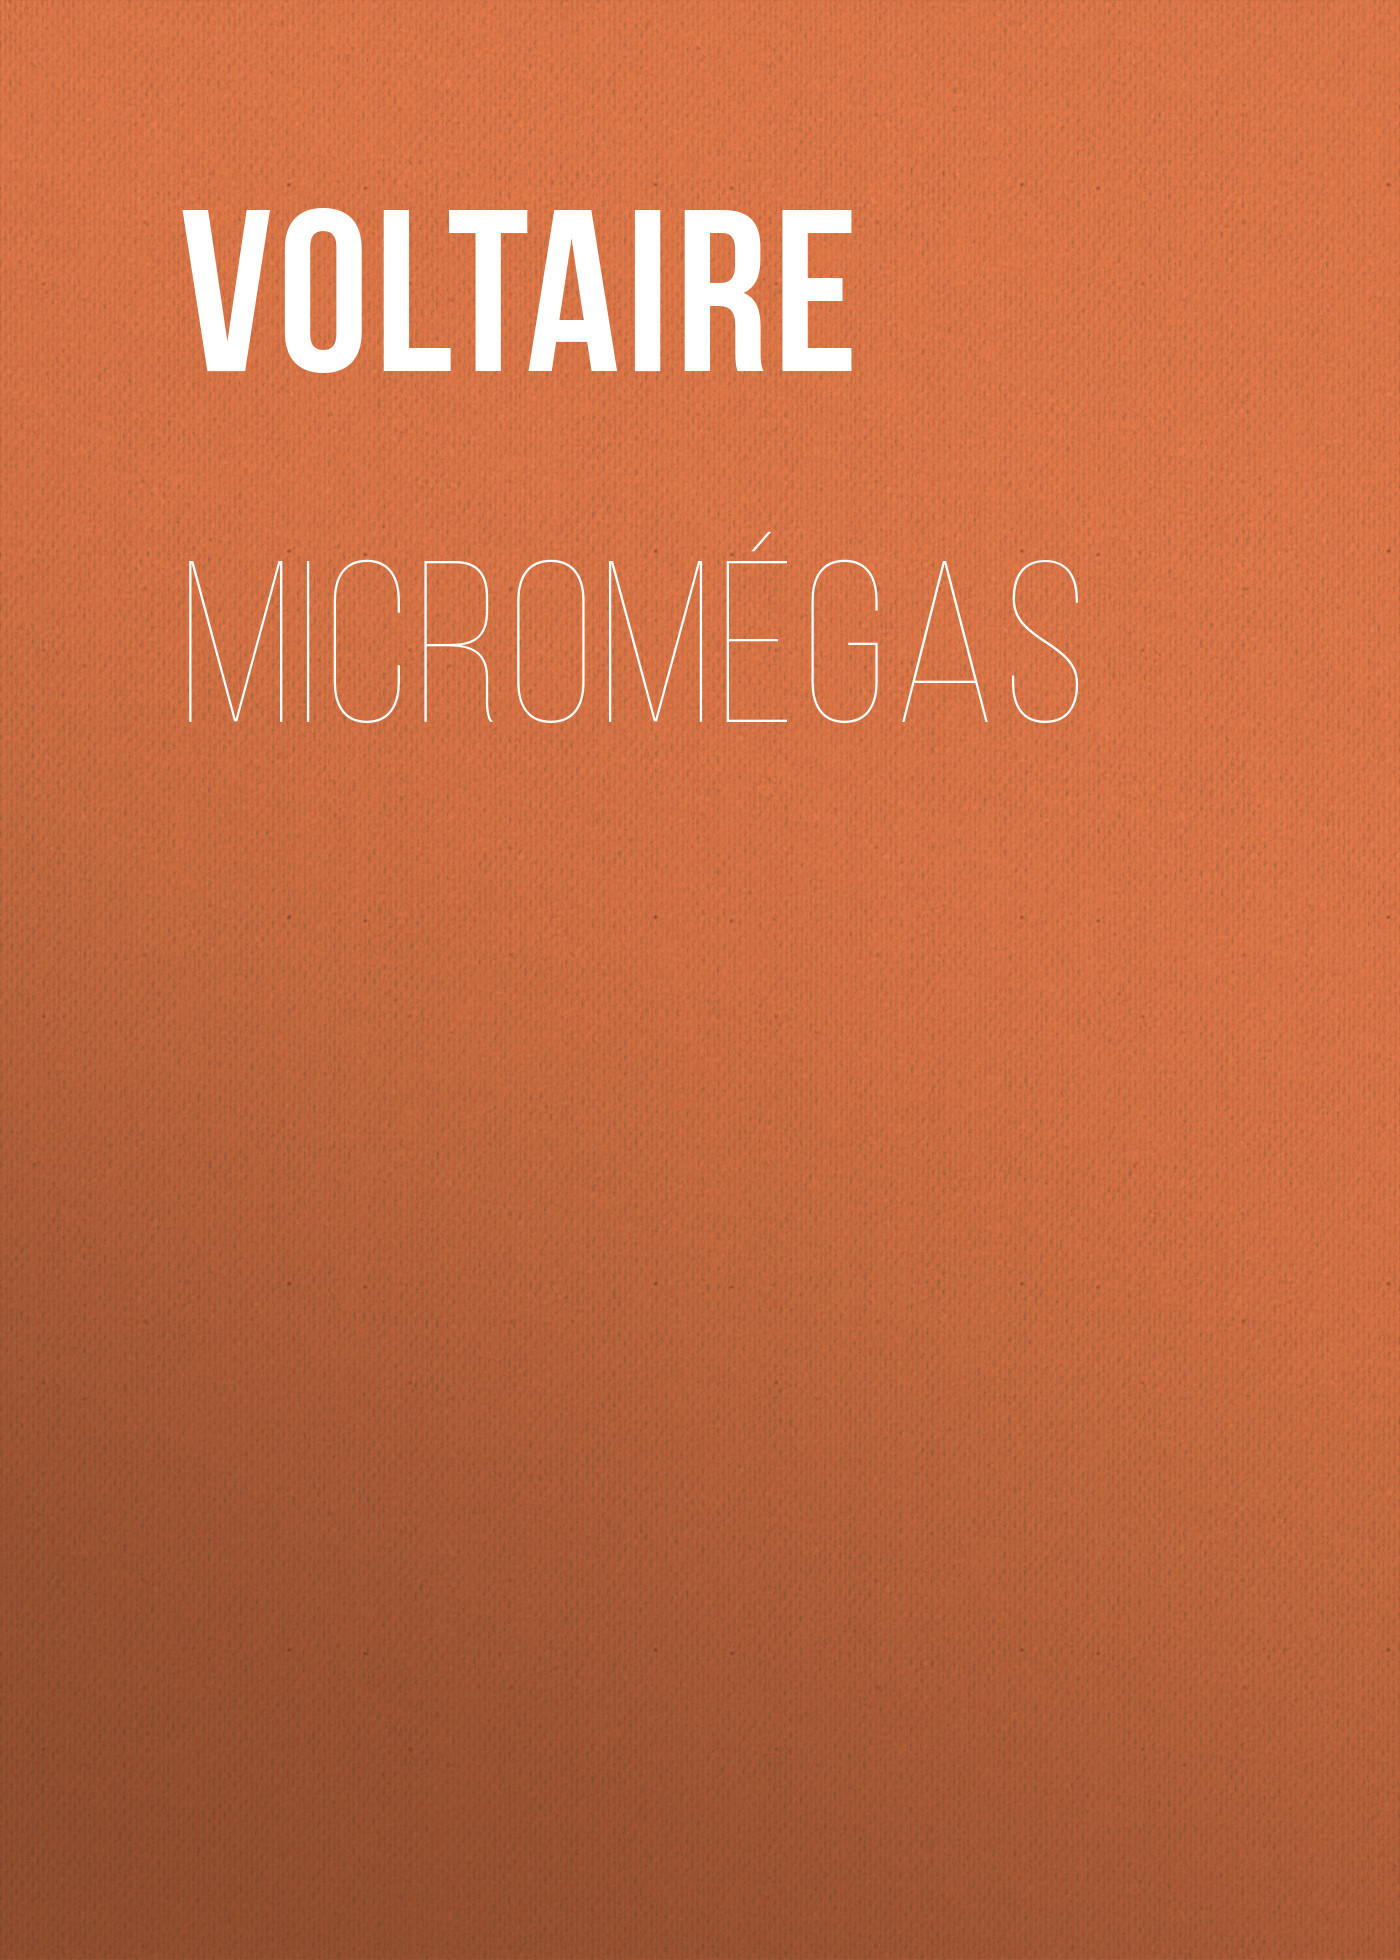 Книга Micromégas из серии , созданная  Voltaire, может относится к жанру Литература 18 века, Зарубежная классика. Стоимость электронной книги Micromégas с идентификатором 25560660 составляет 0 руб.